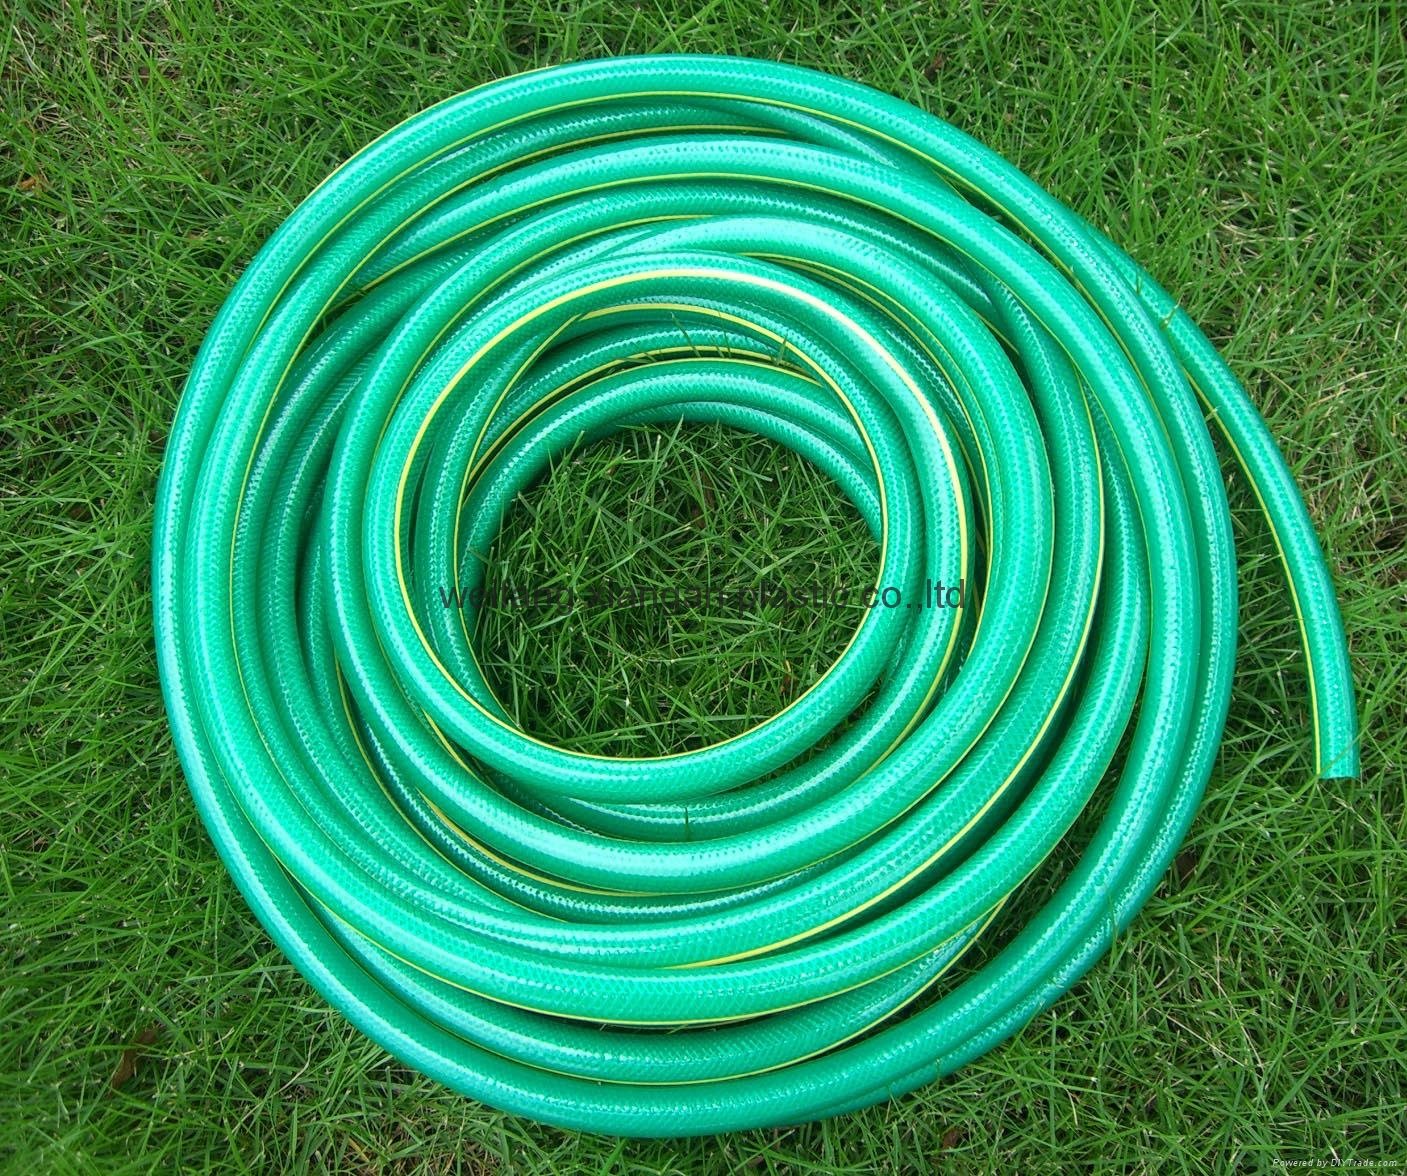 PVC garden hose 5